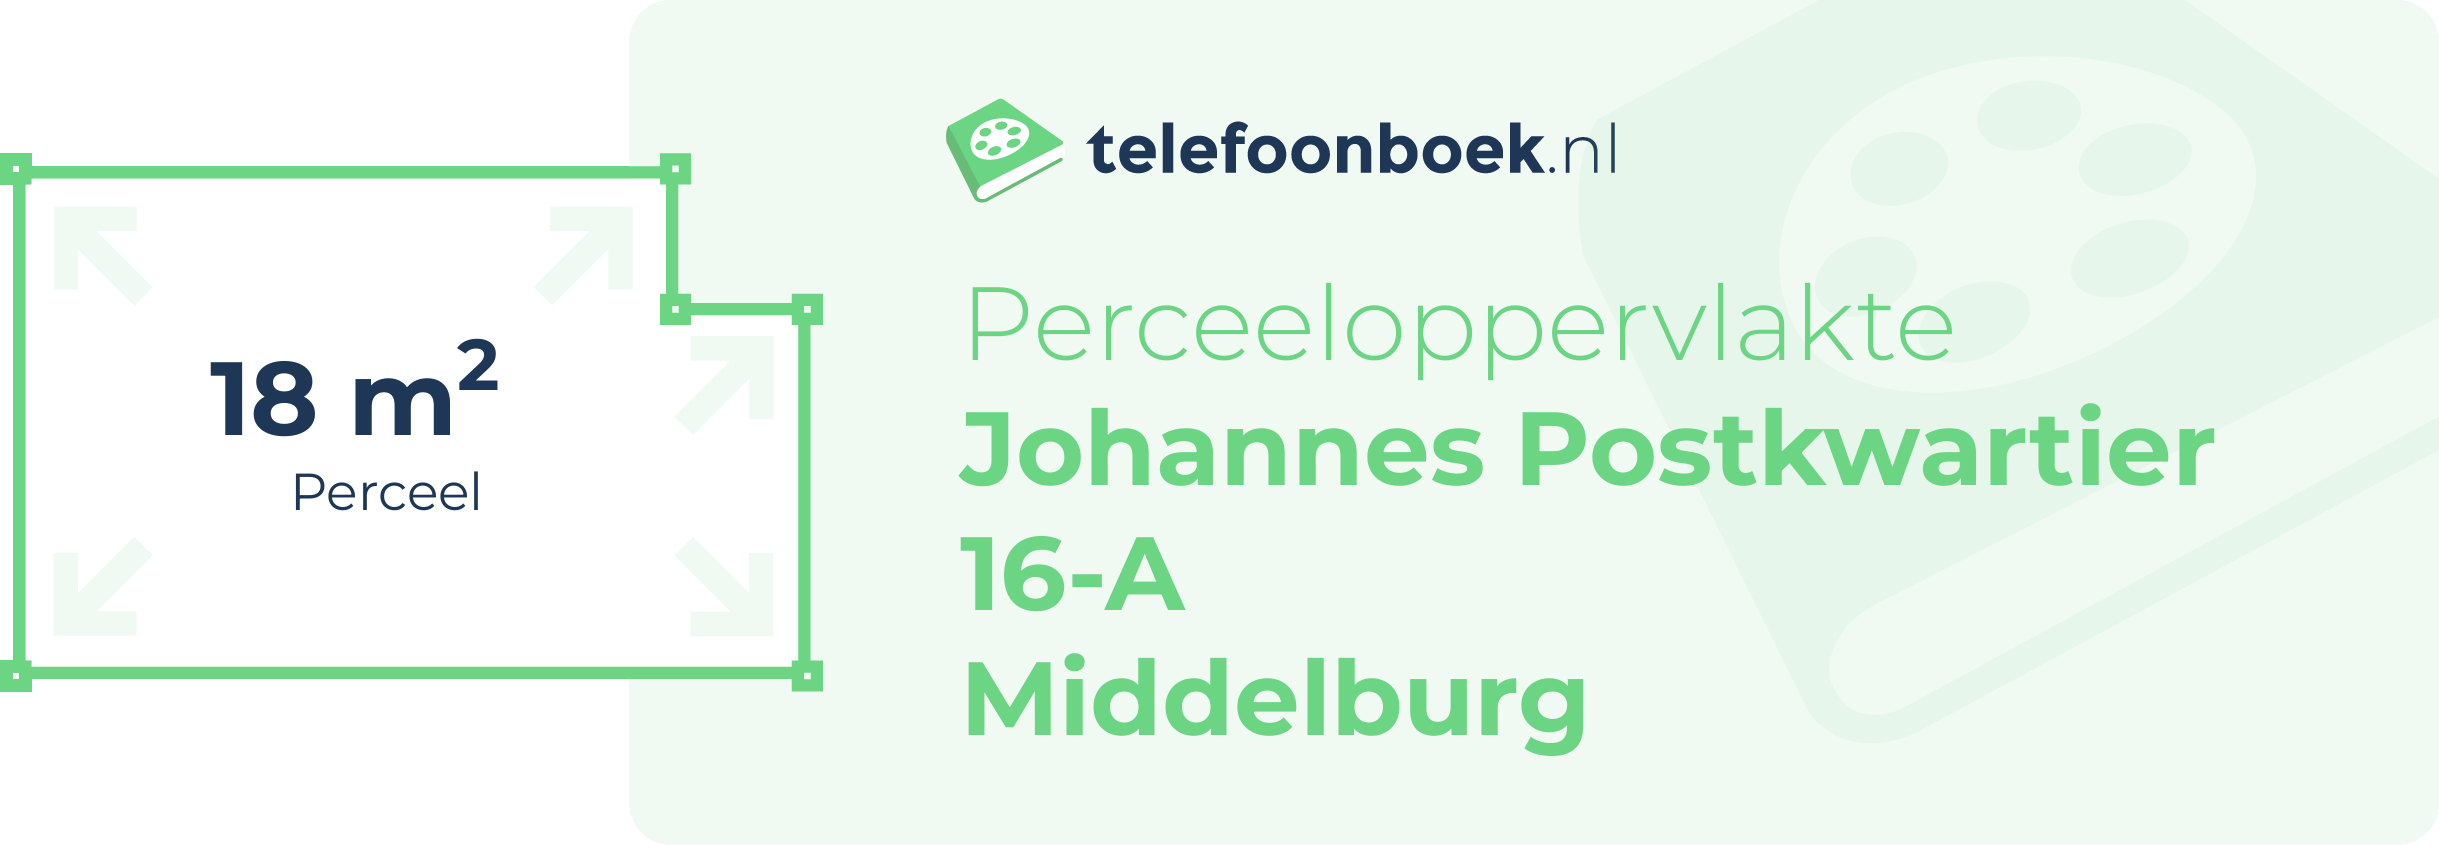 Perceeloppervlakte Johannes Postkwartier 16-A Middelburg